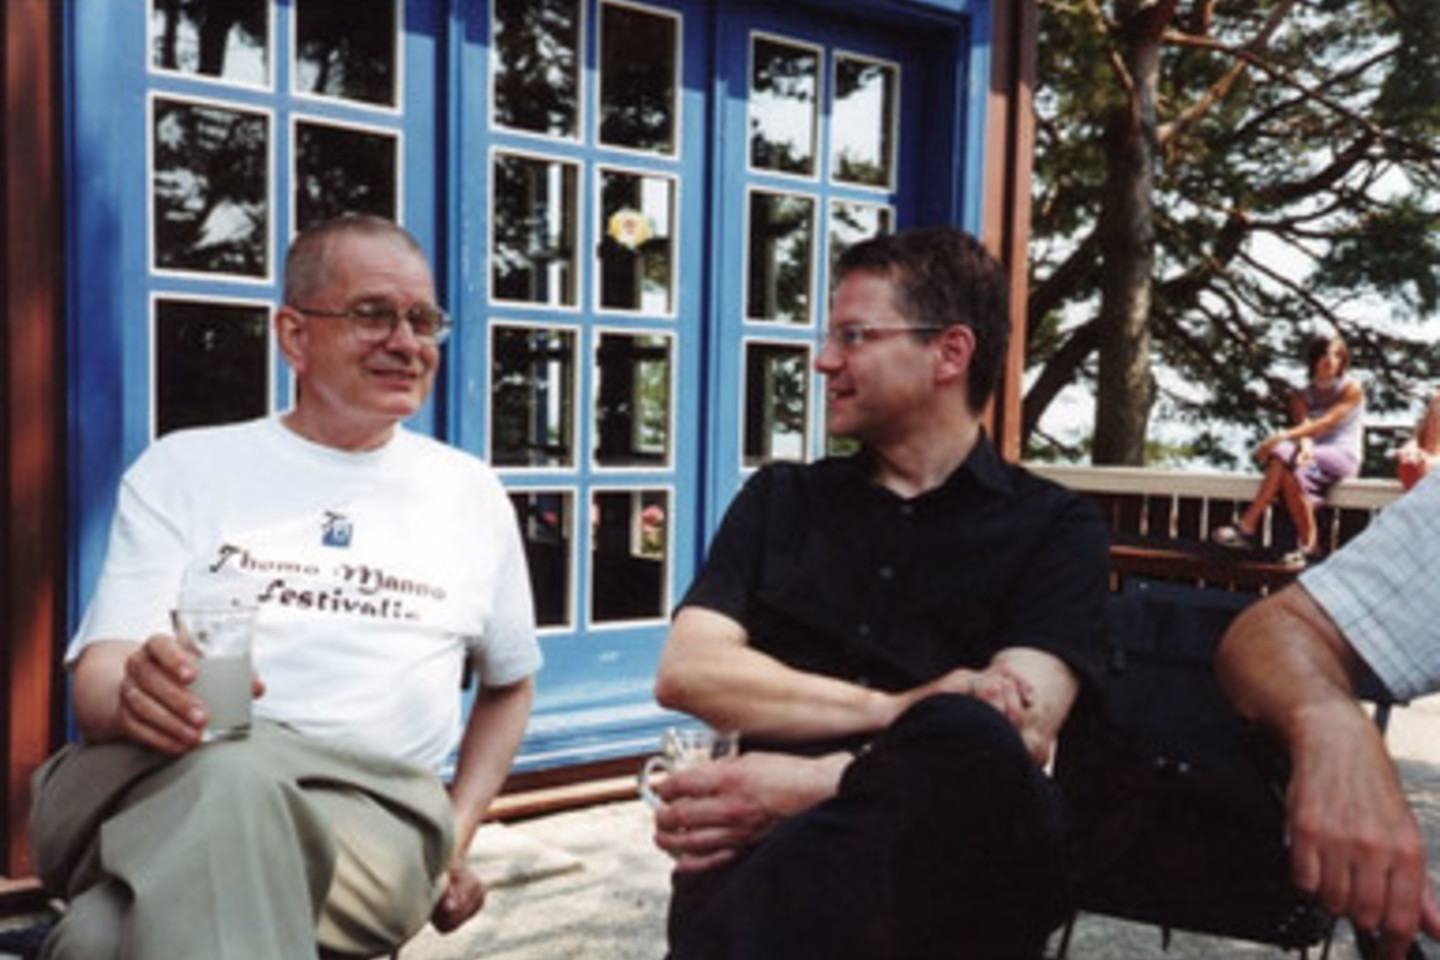 Nida 2002 m. Tomo Mano namelyje su vokiečių poetu Durs Grünbeinu.<br>Venclovų namų-muziejaus archyvo nuotr.